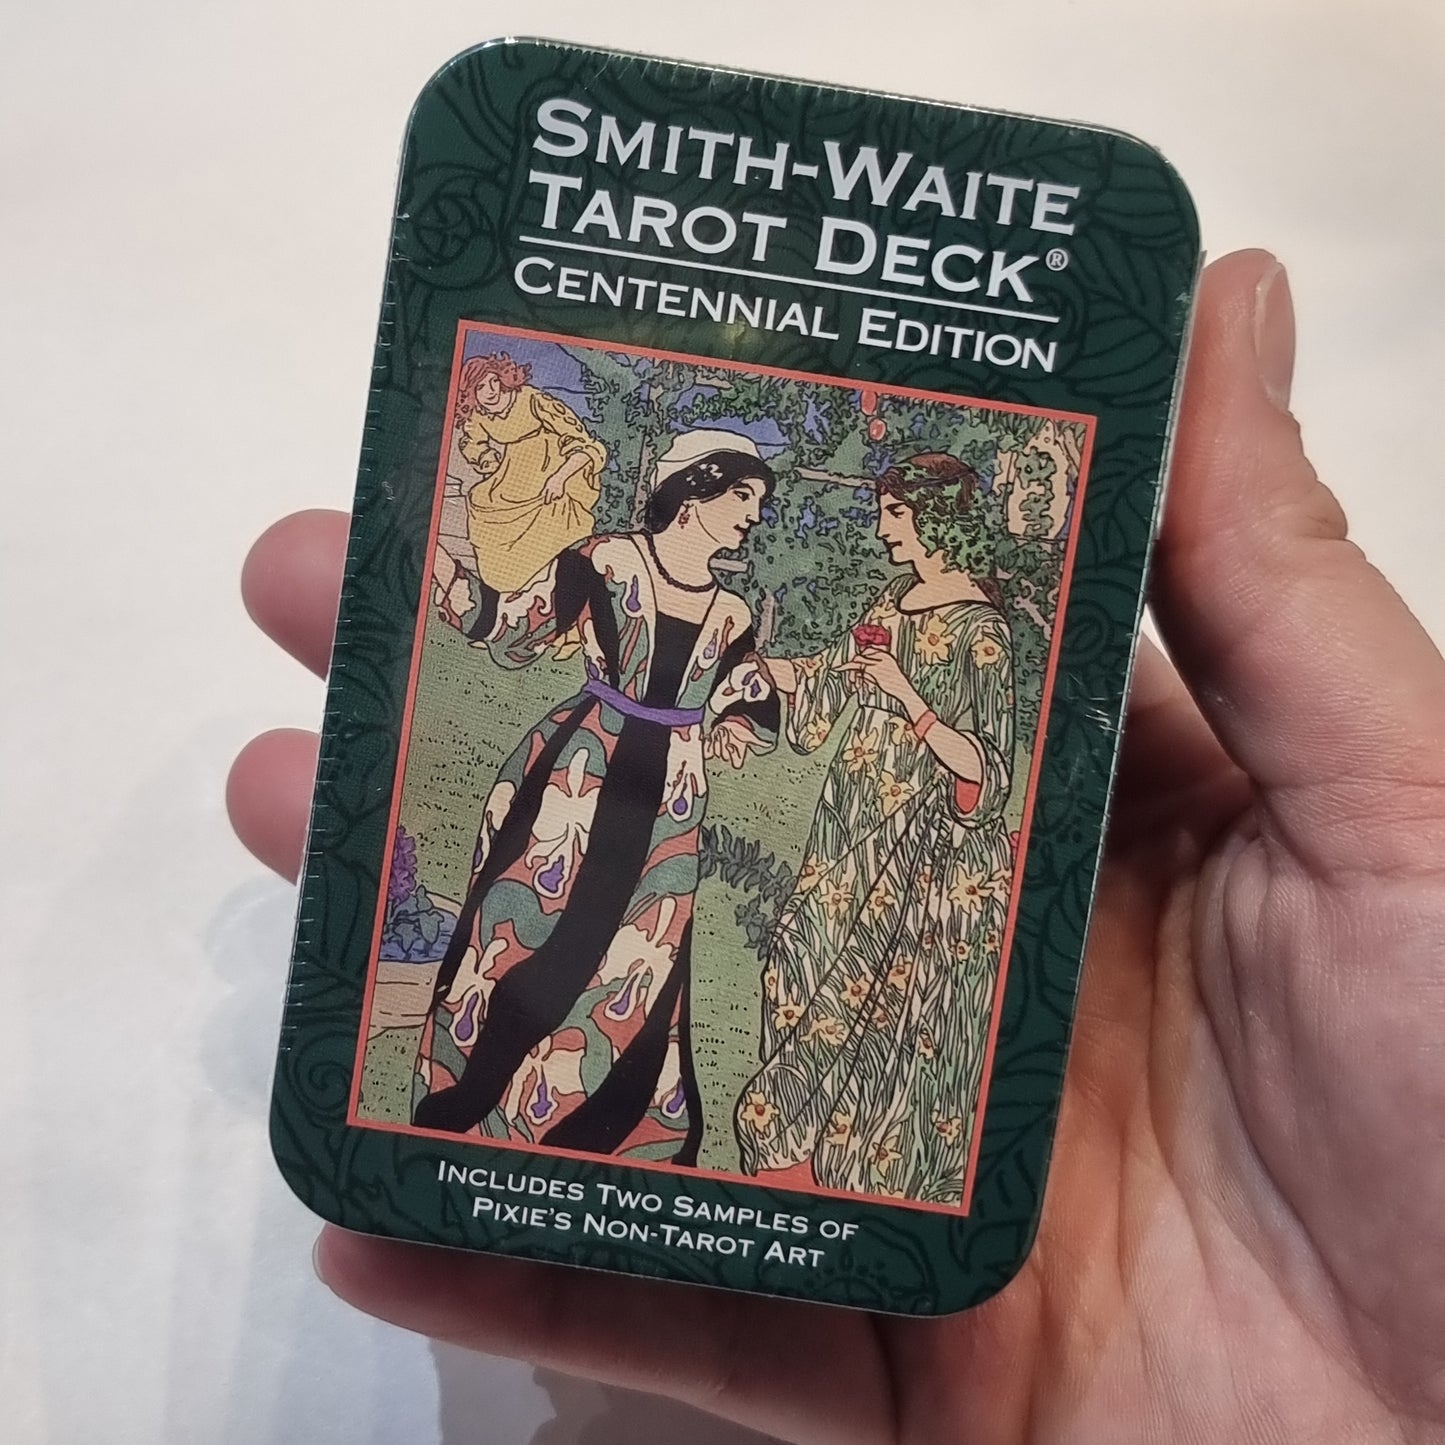 Smith-waite tarot deck - centennial edition - Rivendell Shop